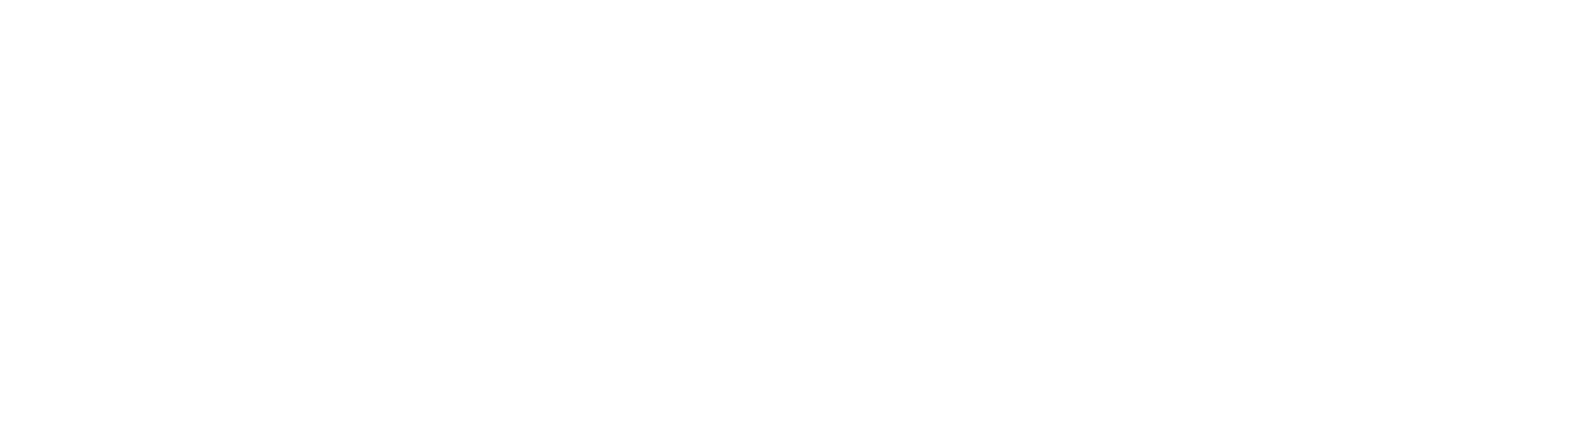 Kingnet Network logo large for dark backgrounds (transparent PNG)